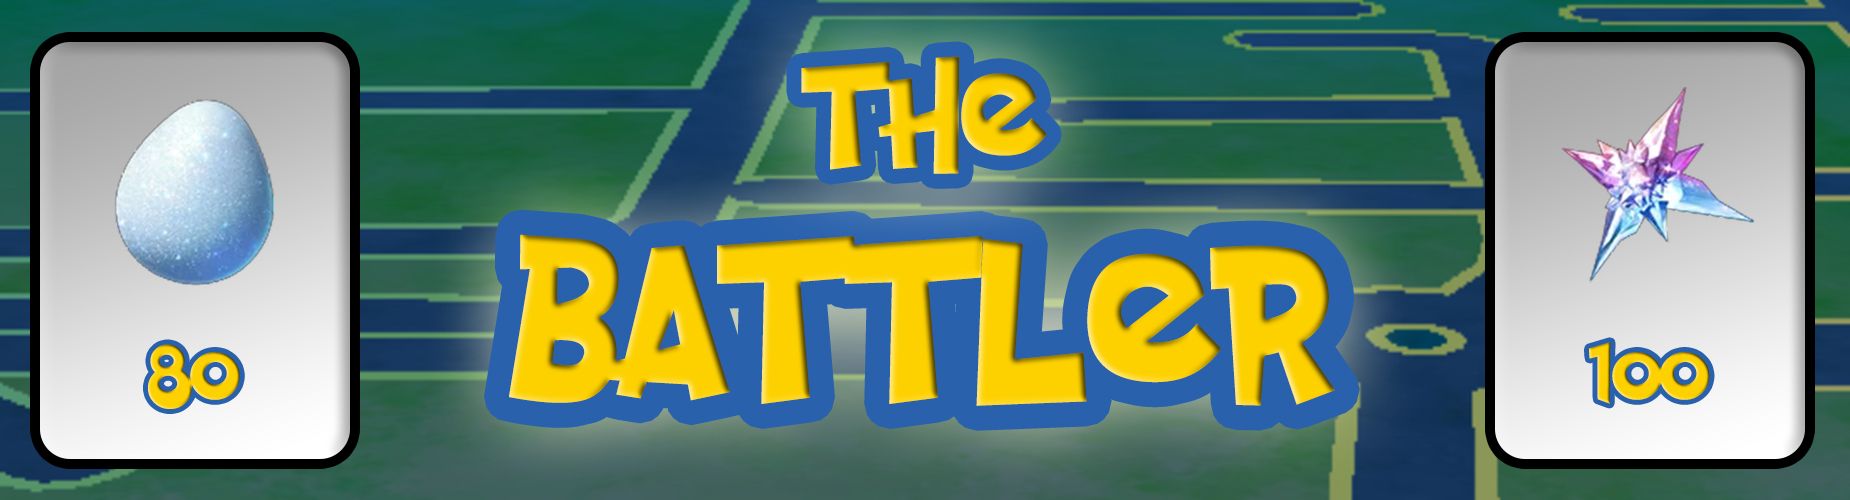 Banner de tipo de jogador Battler